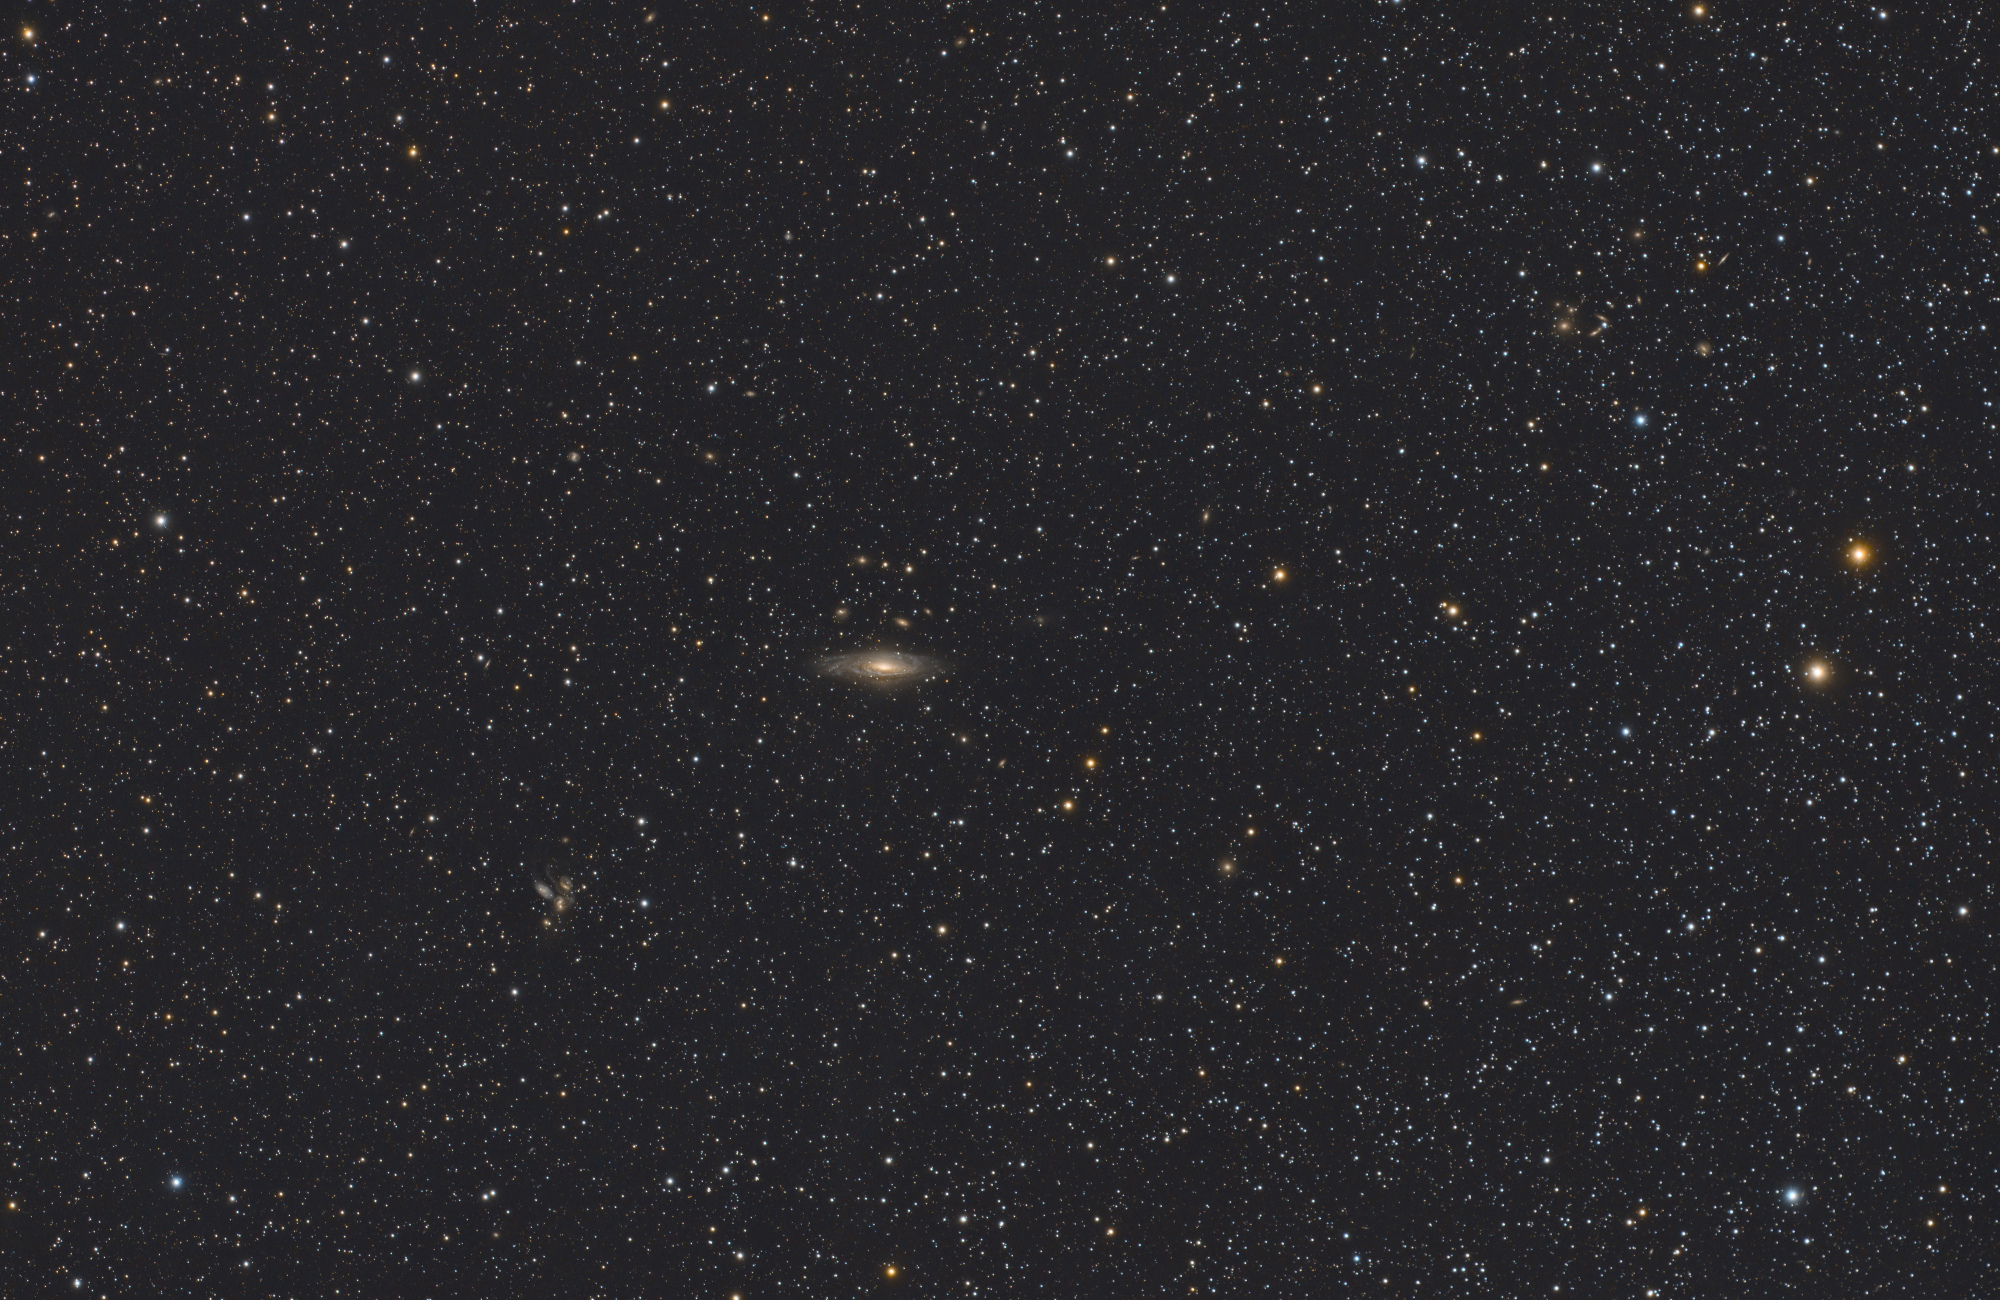 631b27b334969_NGC7331-Drme-foyer-61x180sec.thumb.jpg.9ef723f3f2865c9d73077eea258cfd8f.jpg